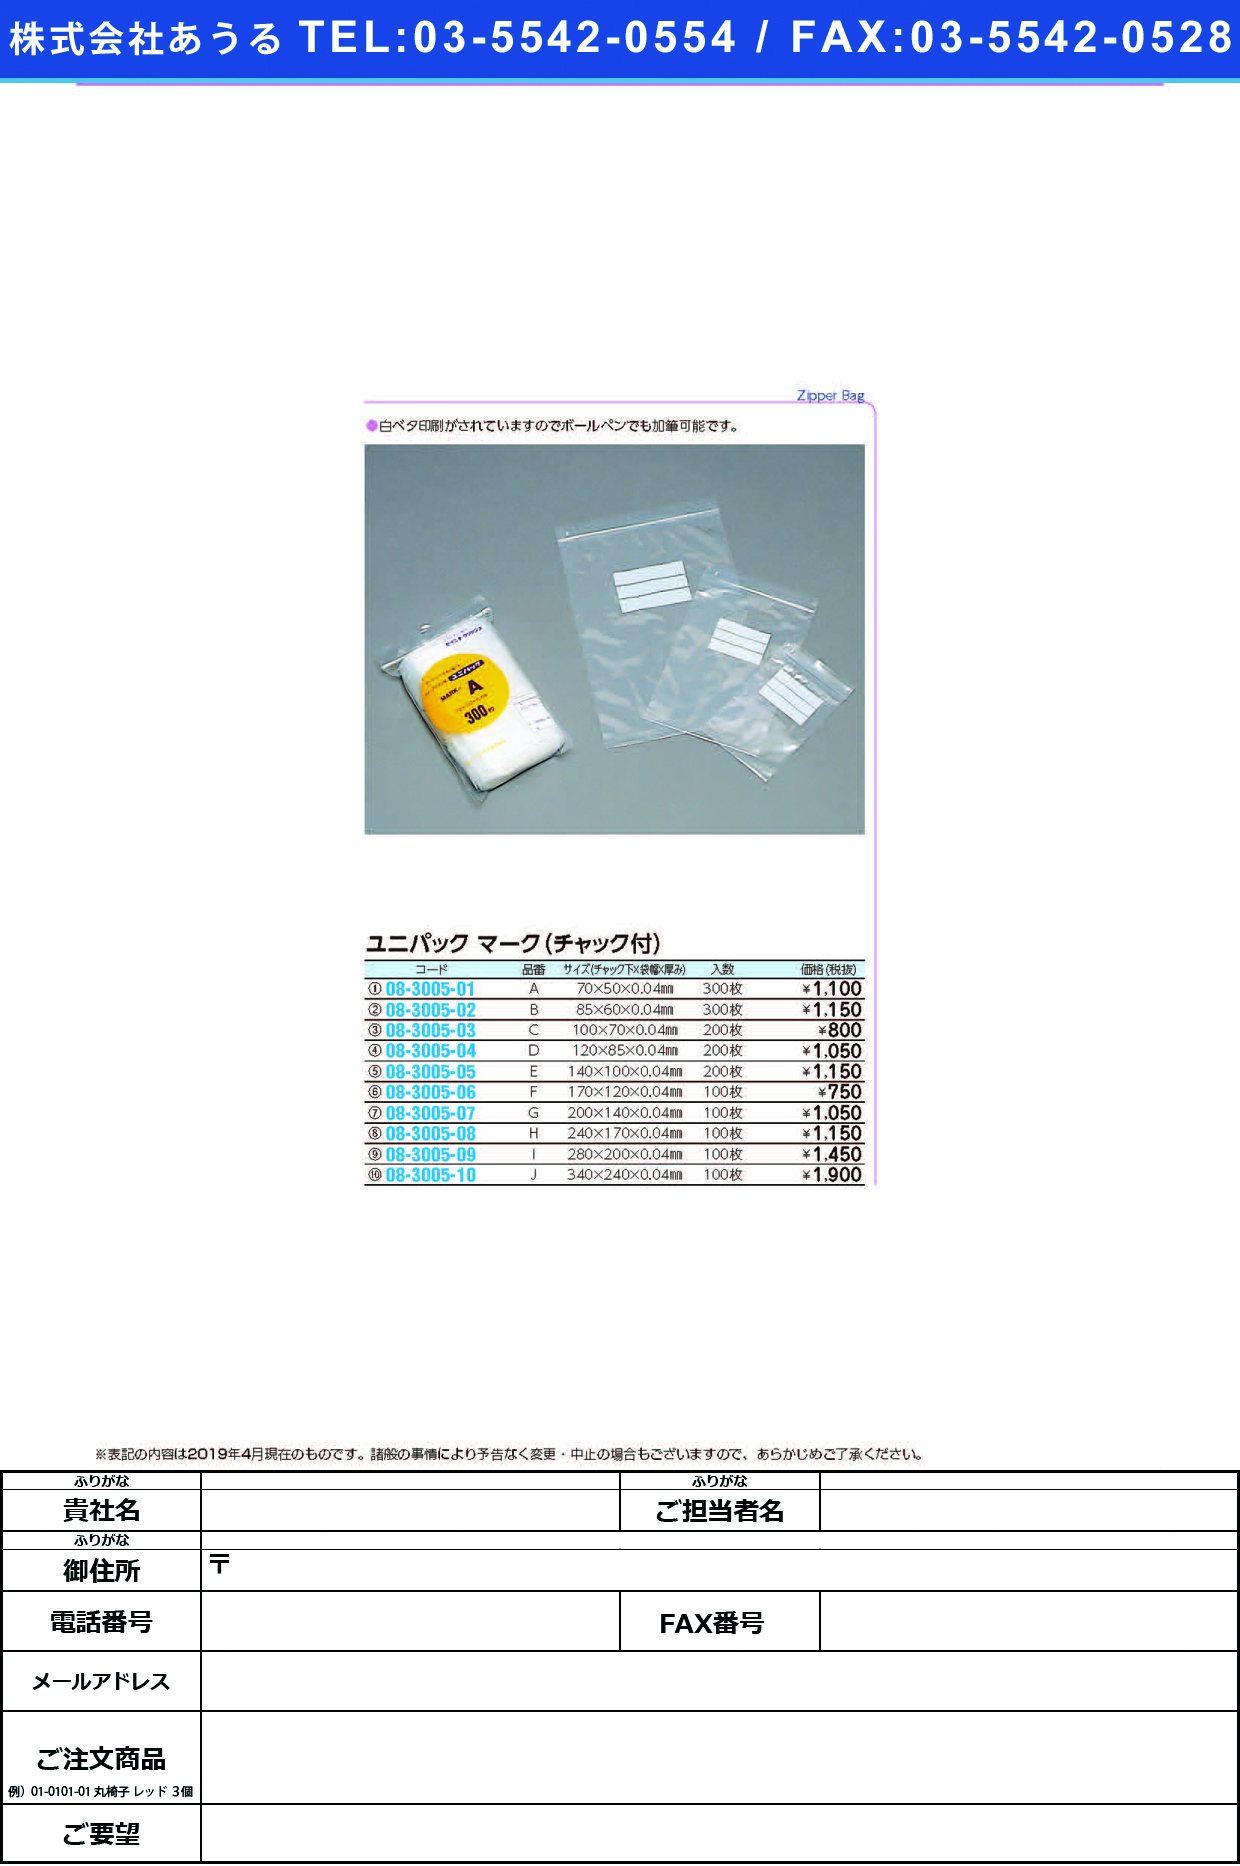 (08-3005-08)ユニパックマーク（チャック付）Ｈ MARK-H(240X170)100ﾏｲ ﾕﾆﾊﾟｯｸﾏｰｸ(ﾁｬｯｸﾂｷ)H【1袋単位】【2019年カタログ商品】